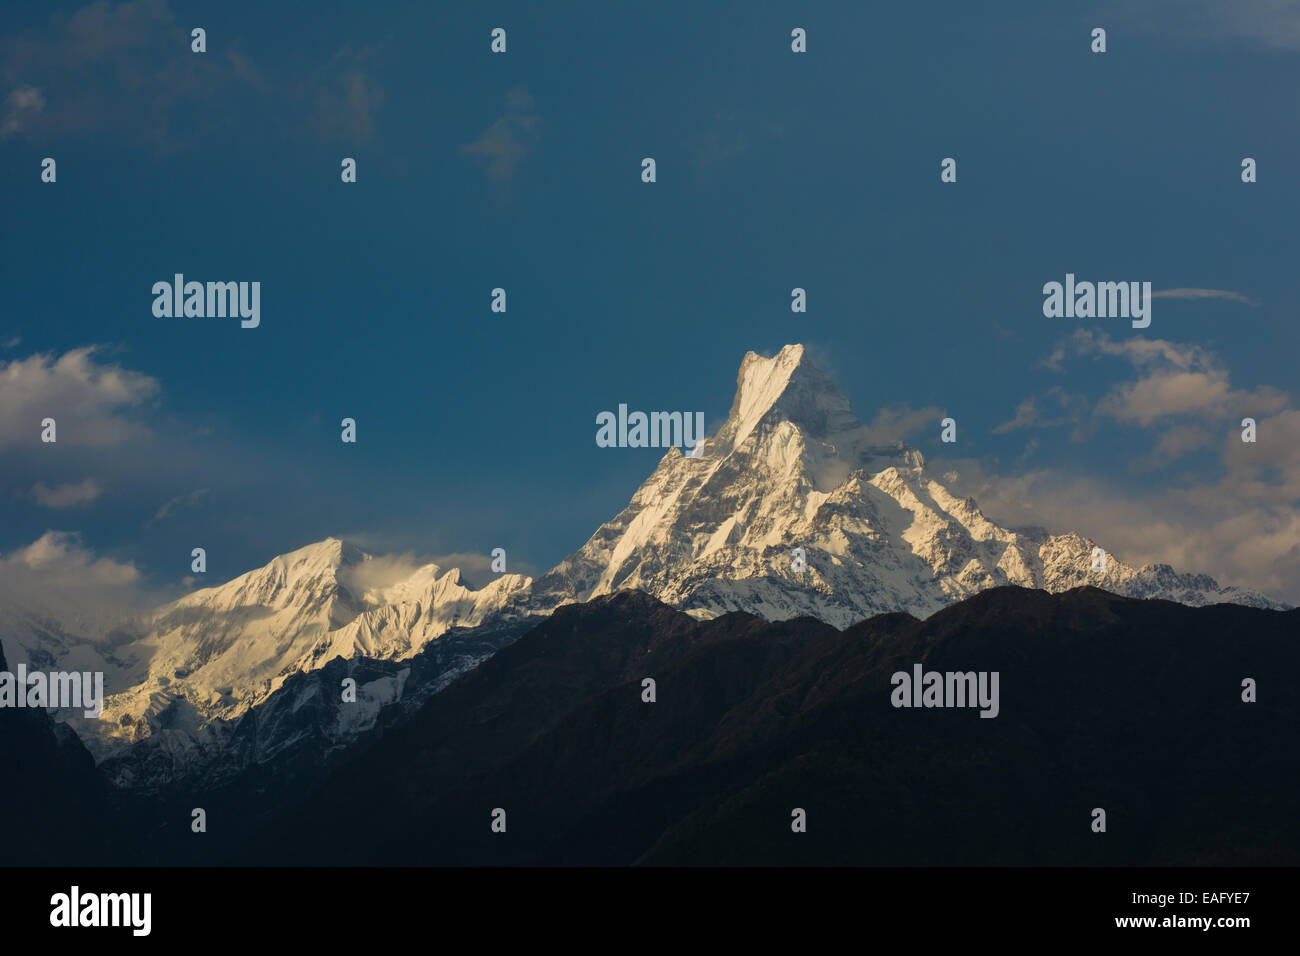 Fishtail Mountain 'Machhapuchre mountain'. Nepal Stock Photo